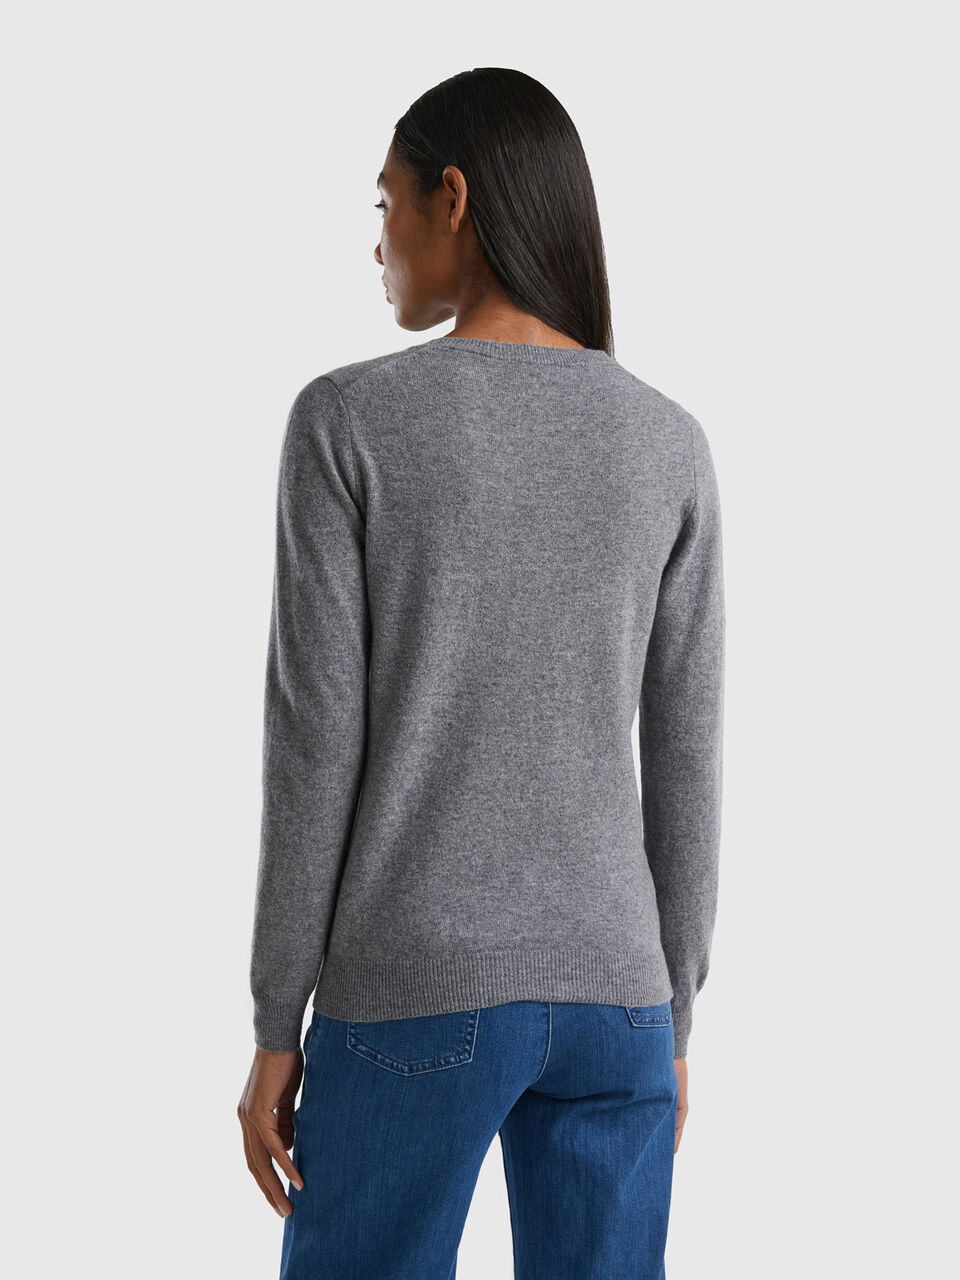 Gray crew neck sweater in Merino wool - Gray | Benetton